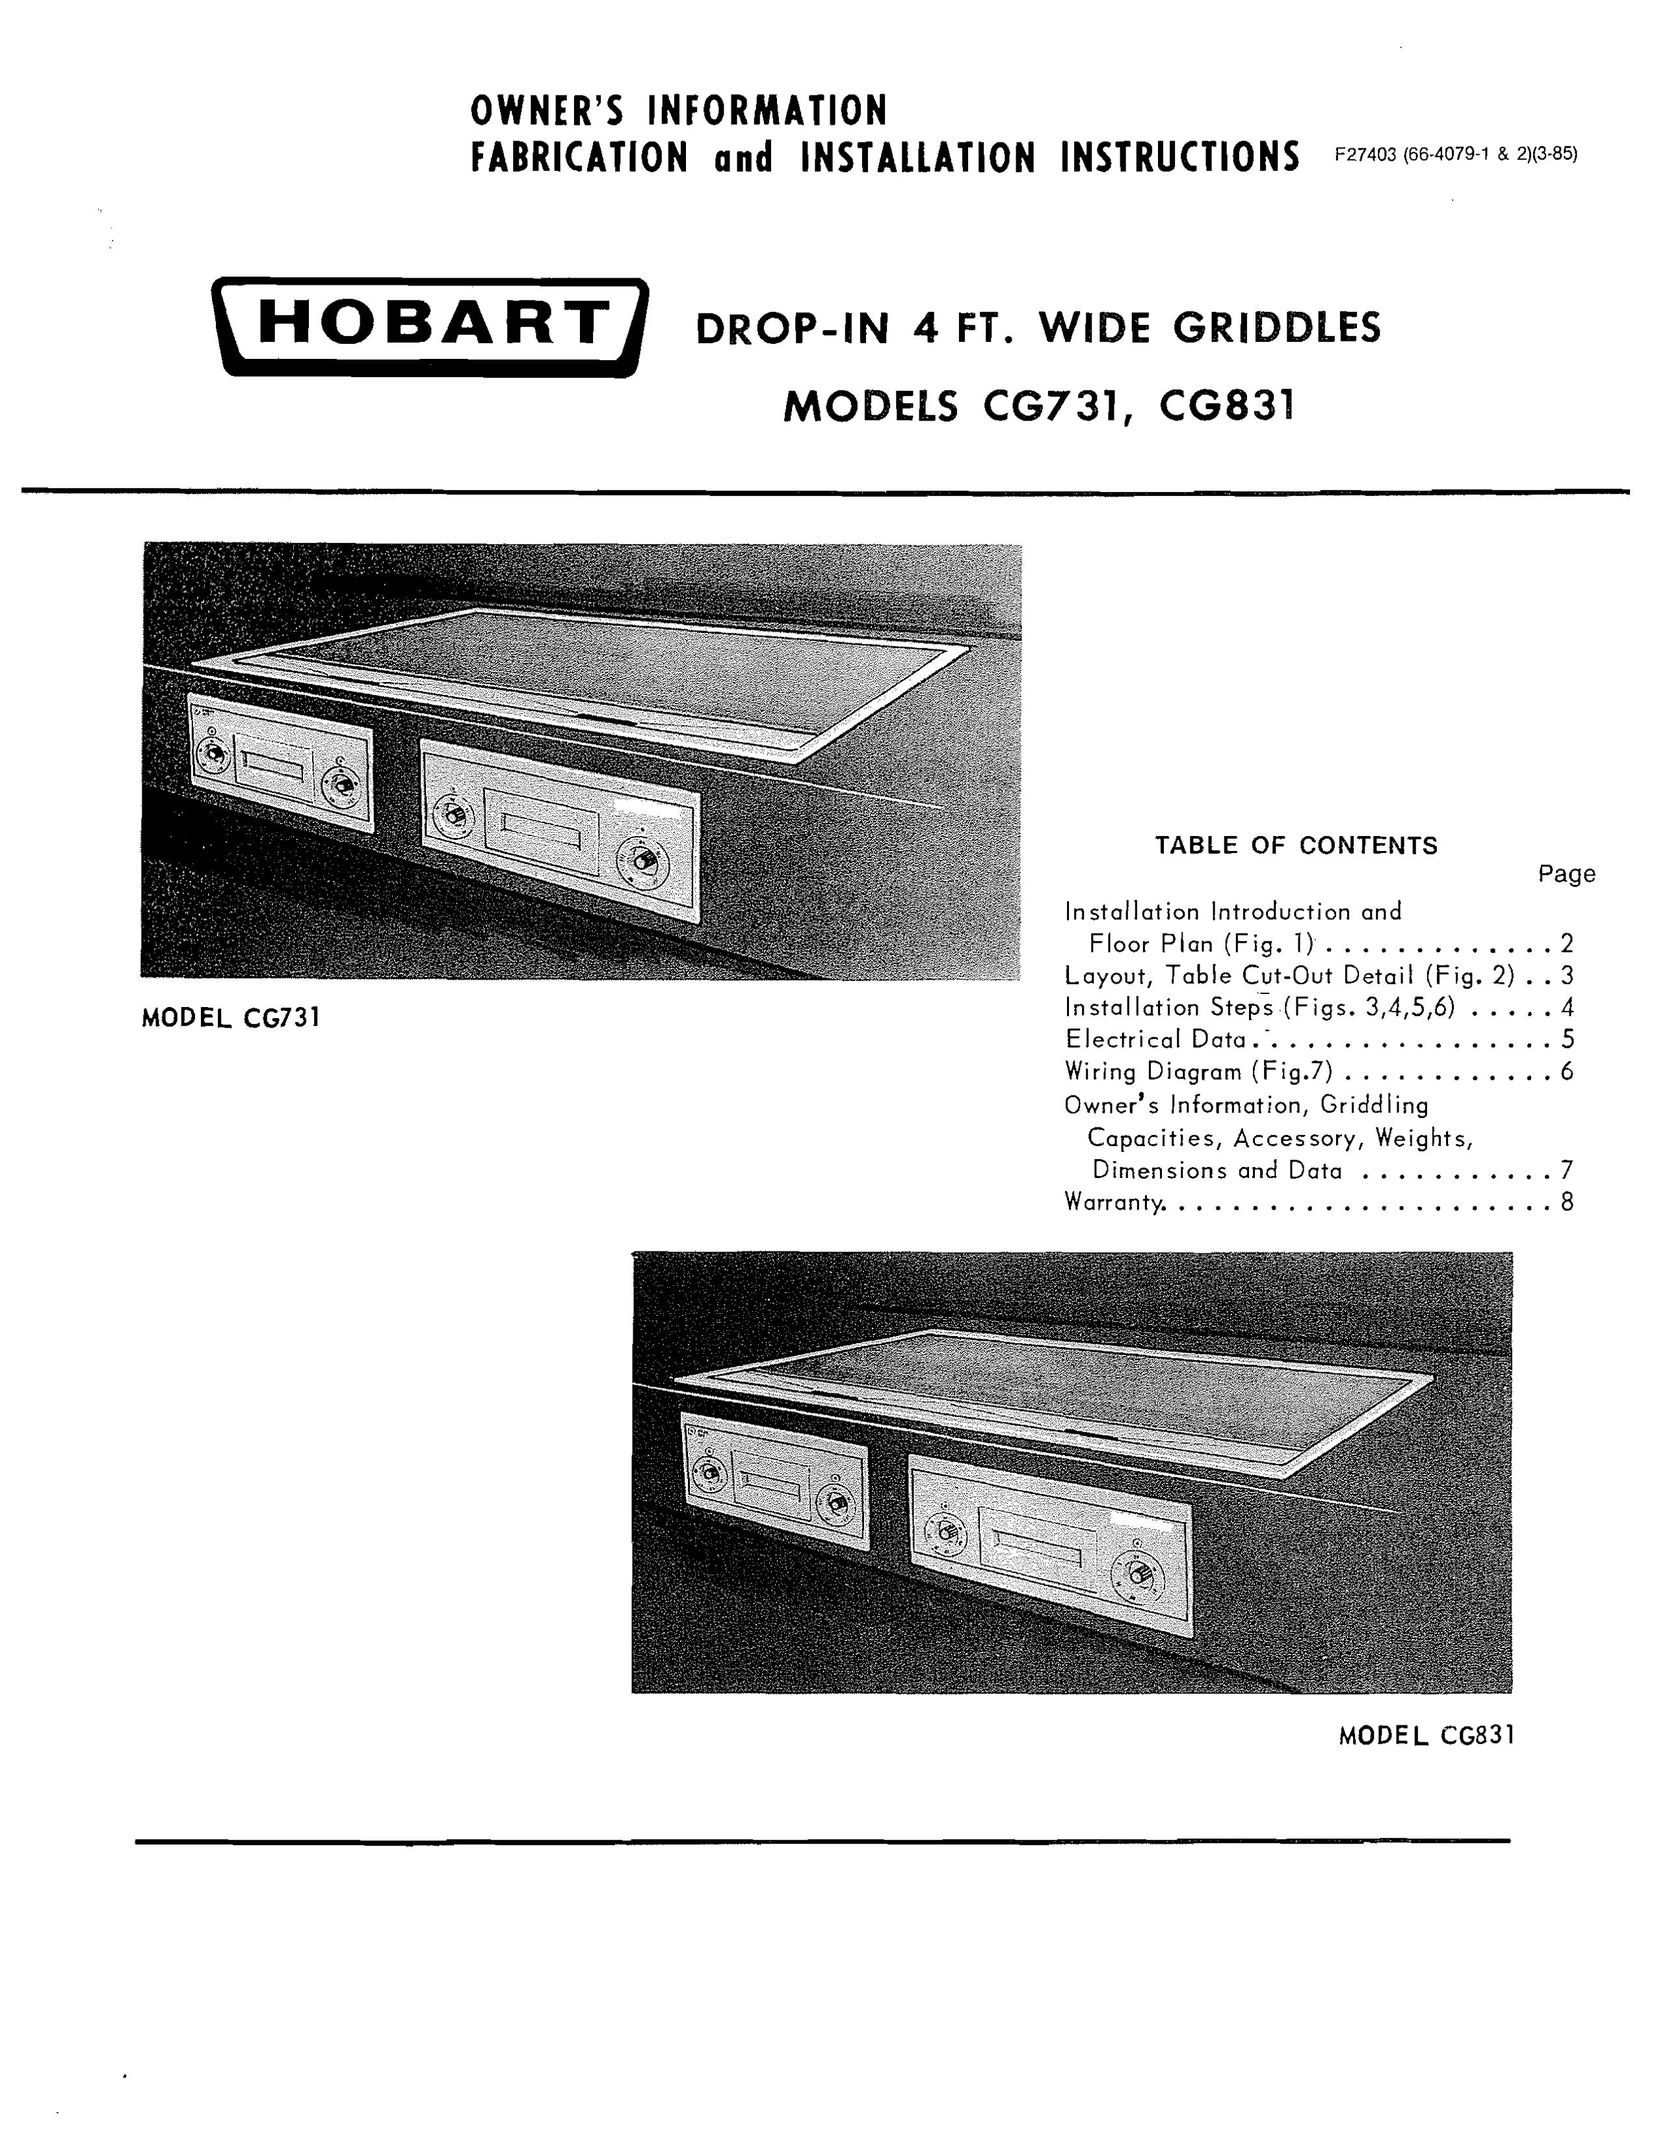 Hobart CG831 Sander User Manual